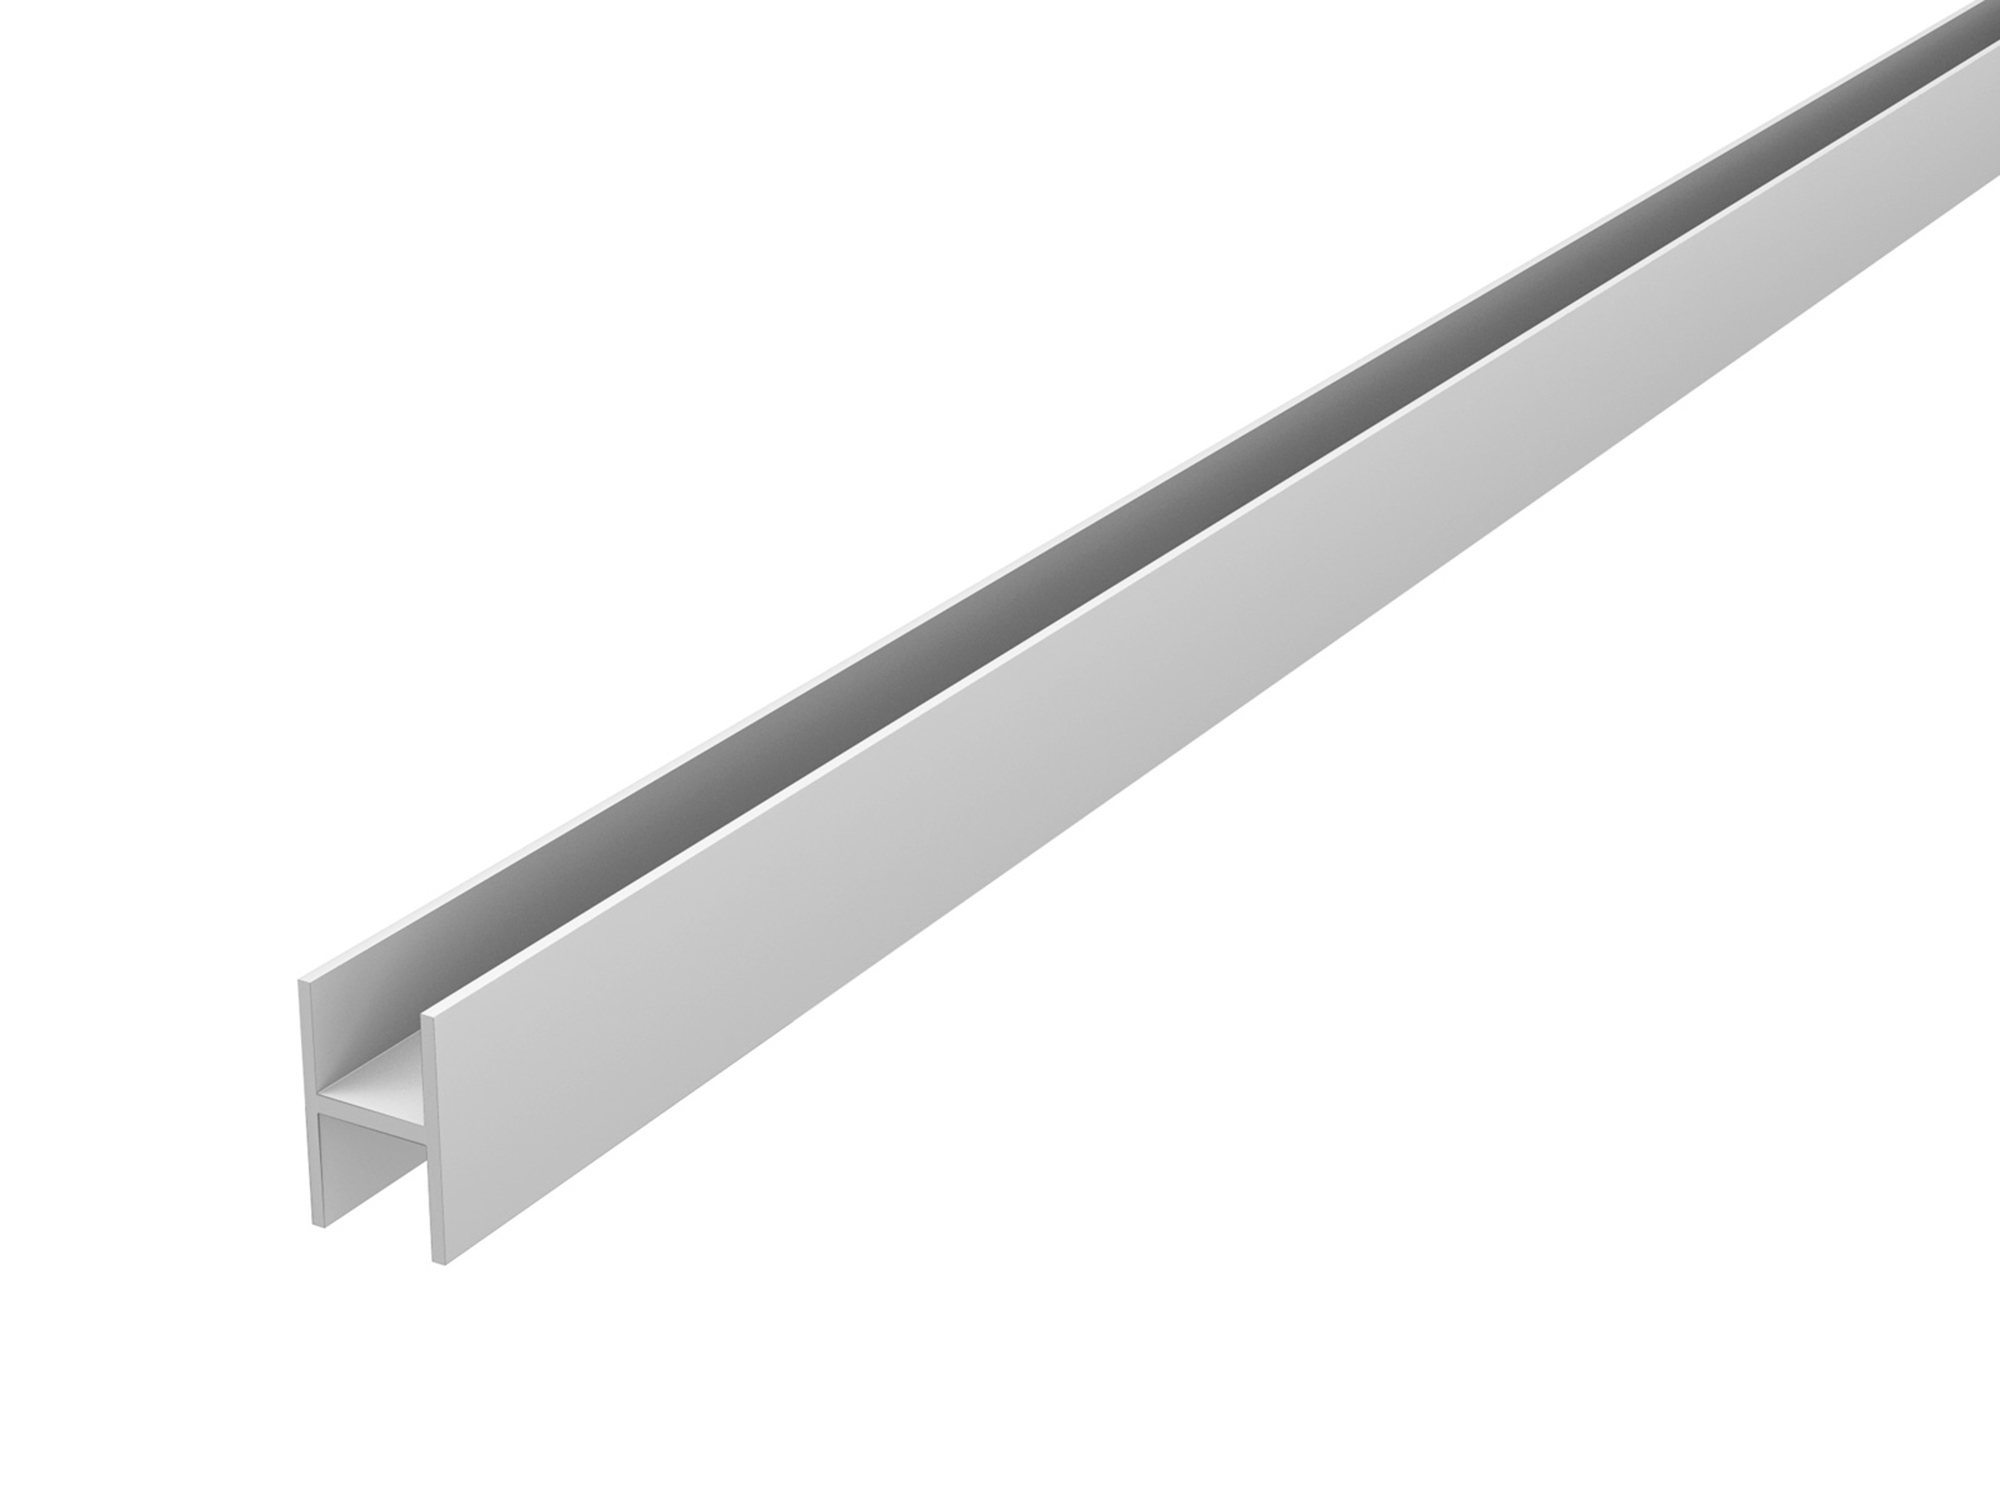 Планка соединительная для стеновой панели СТ-1 глянец Серый, Металл аксессуар для холодильников bosch ksz36aw00 соединительная планка